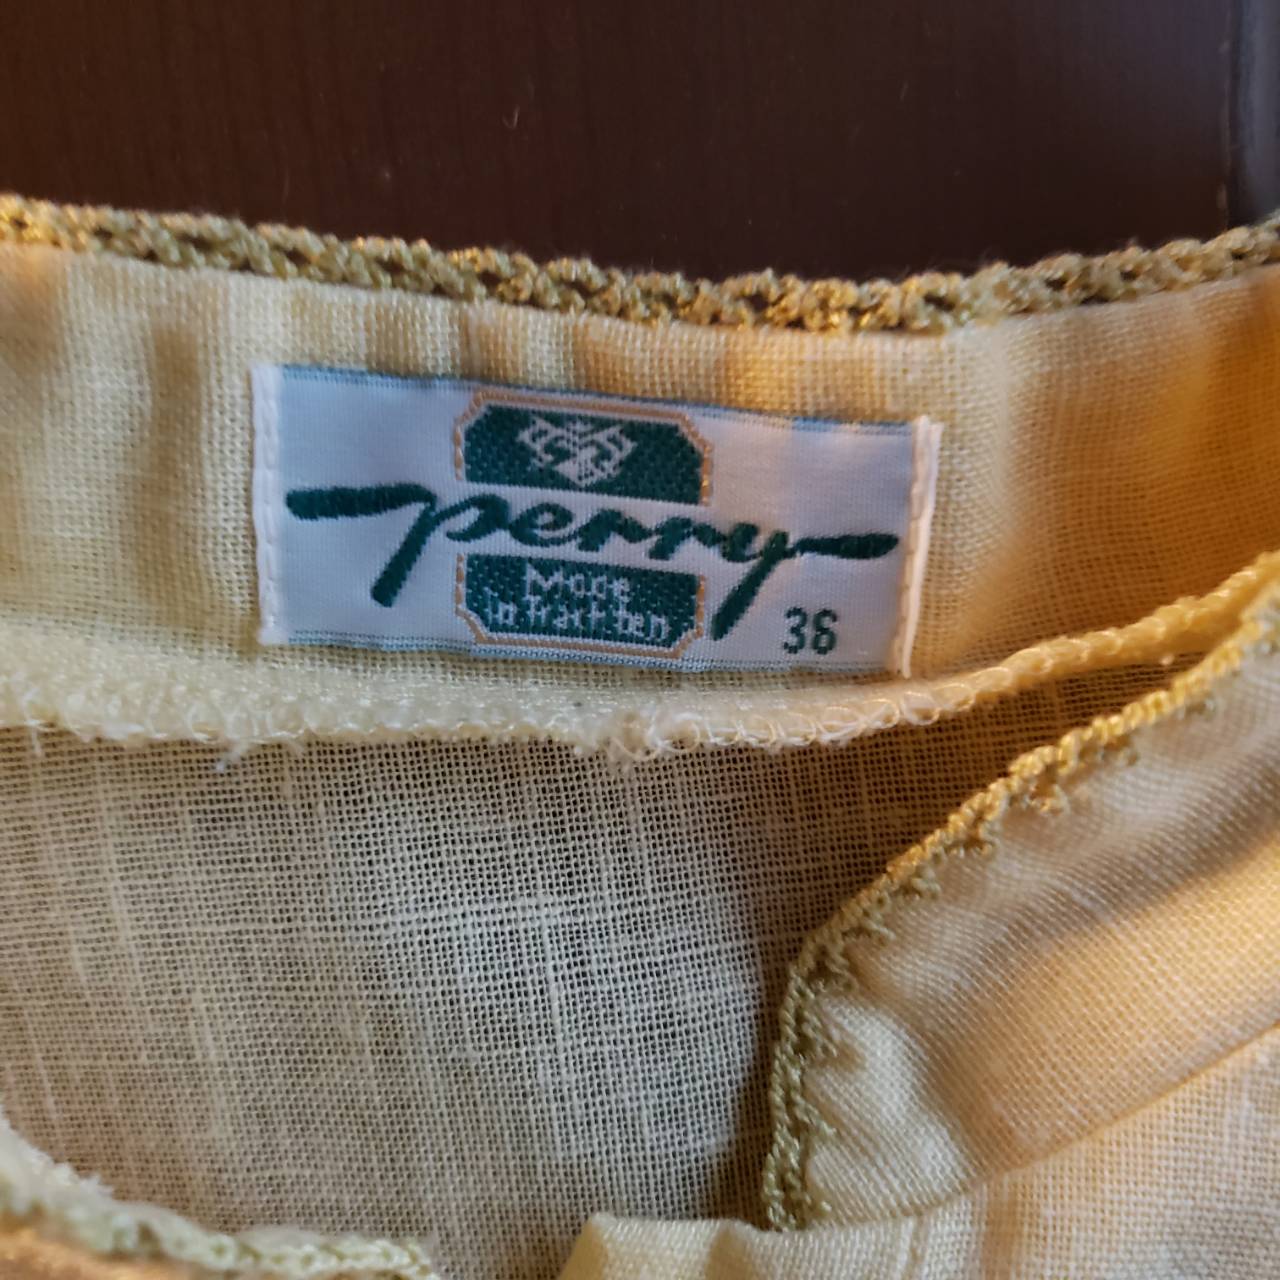 Vintage(ヴィンテージ) パプスリーブ×フレンチボタン半袖シャツ 36(Mサイズ程度) イエロー ドイツ製